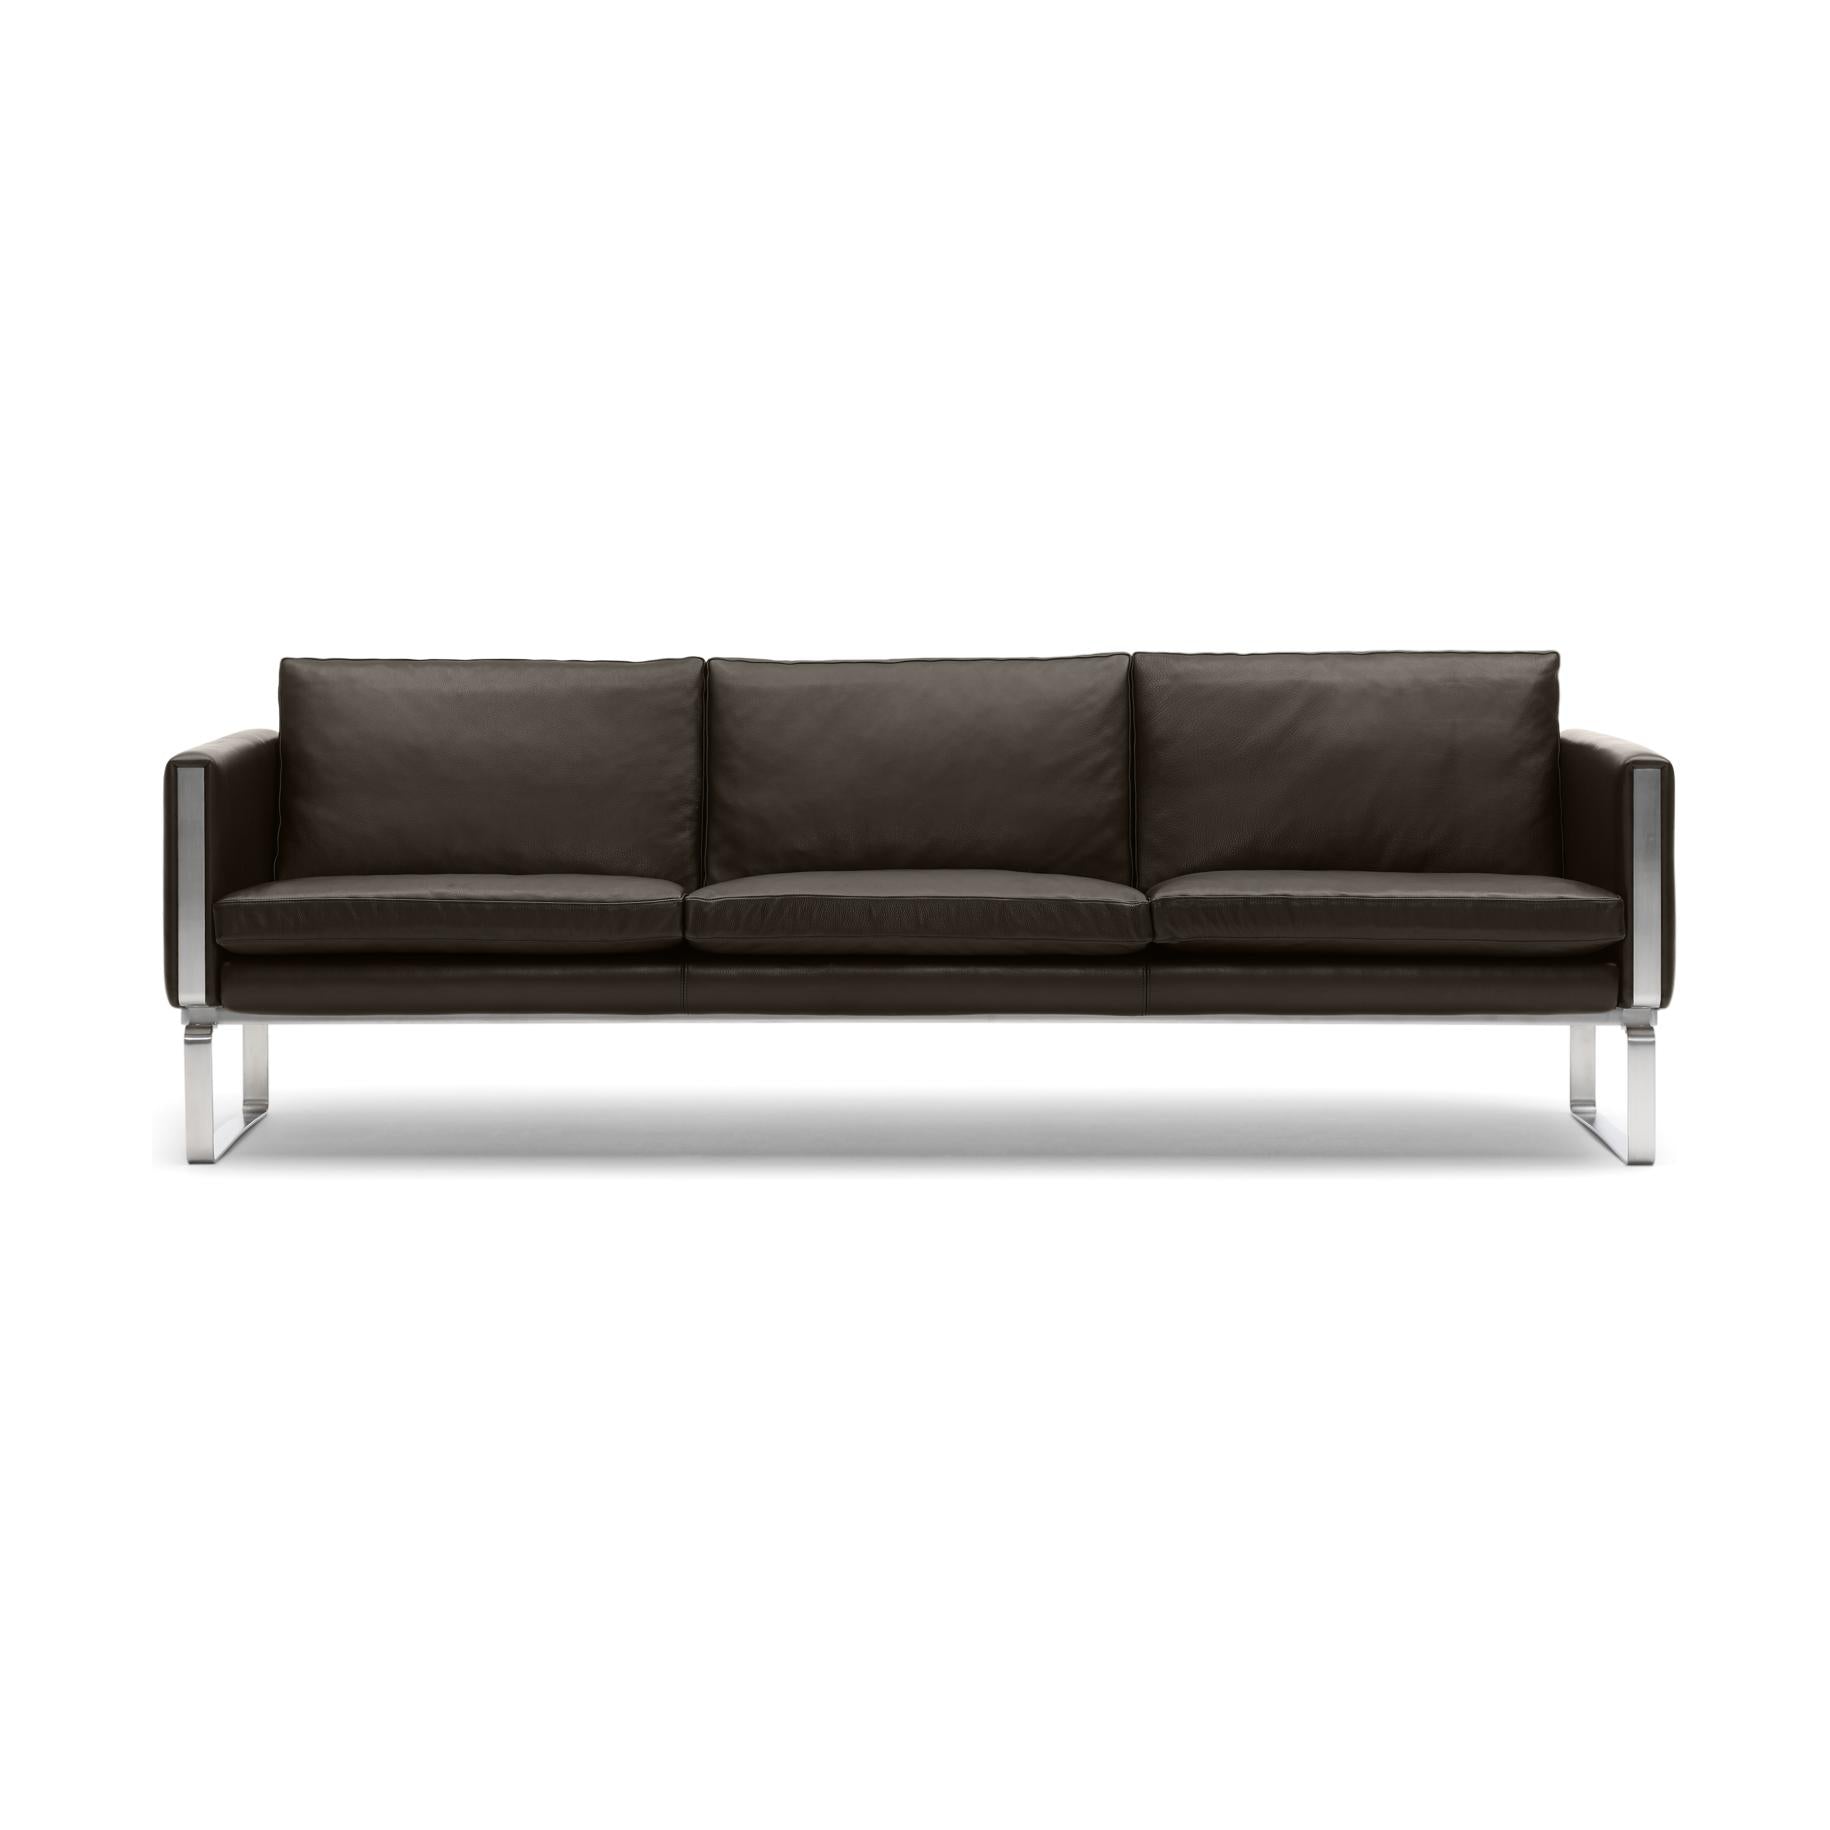 Carl Hansen CH103 divano, in acciaio/pelle marrone scuro